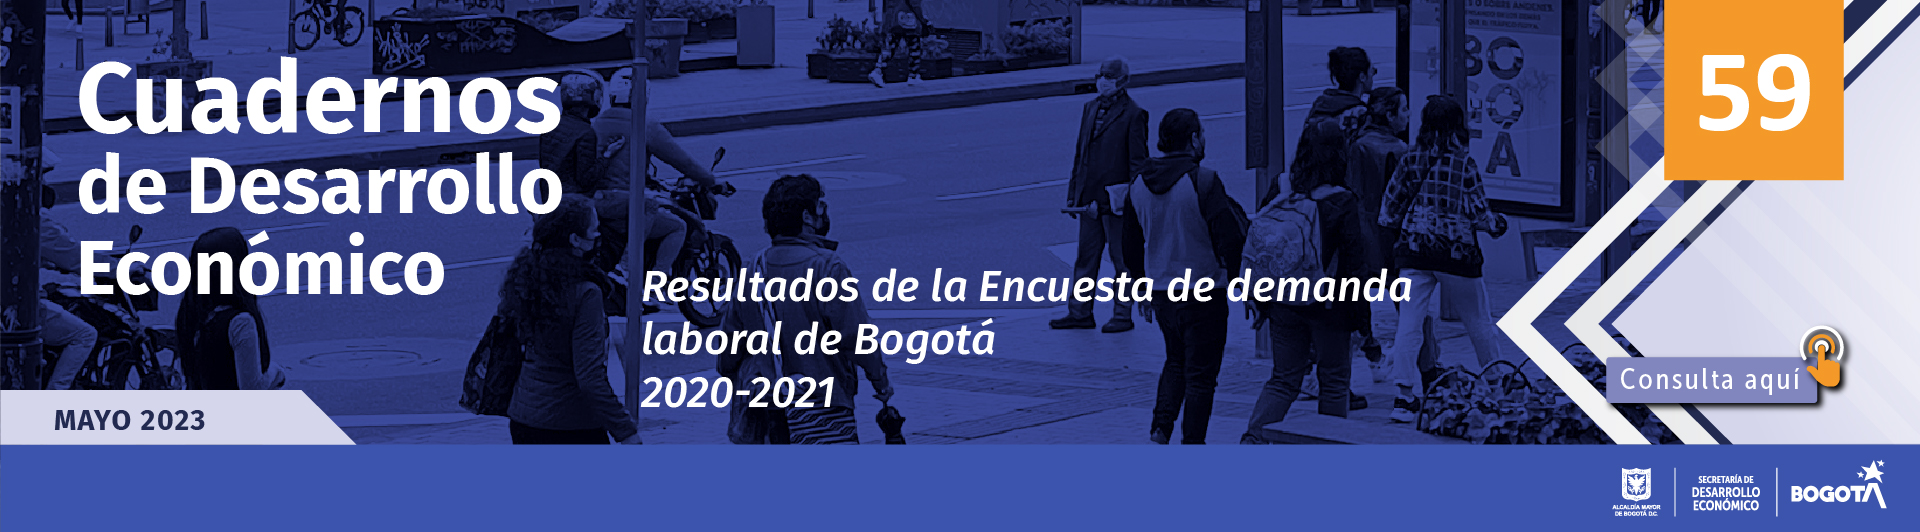 Resultados de la Encuesta de demanda laboral de Bogotá, 2020-2021